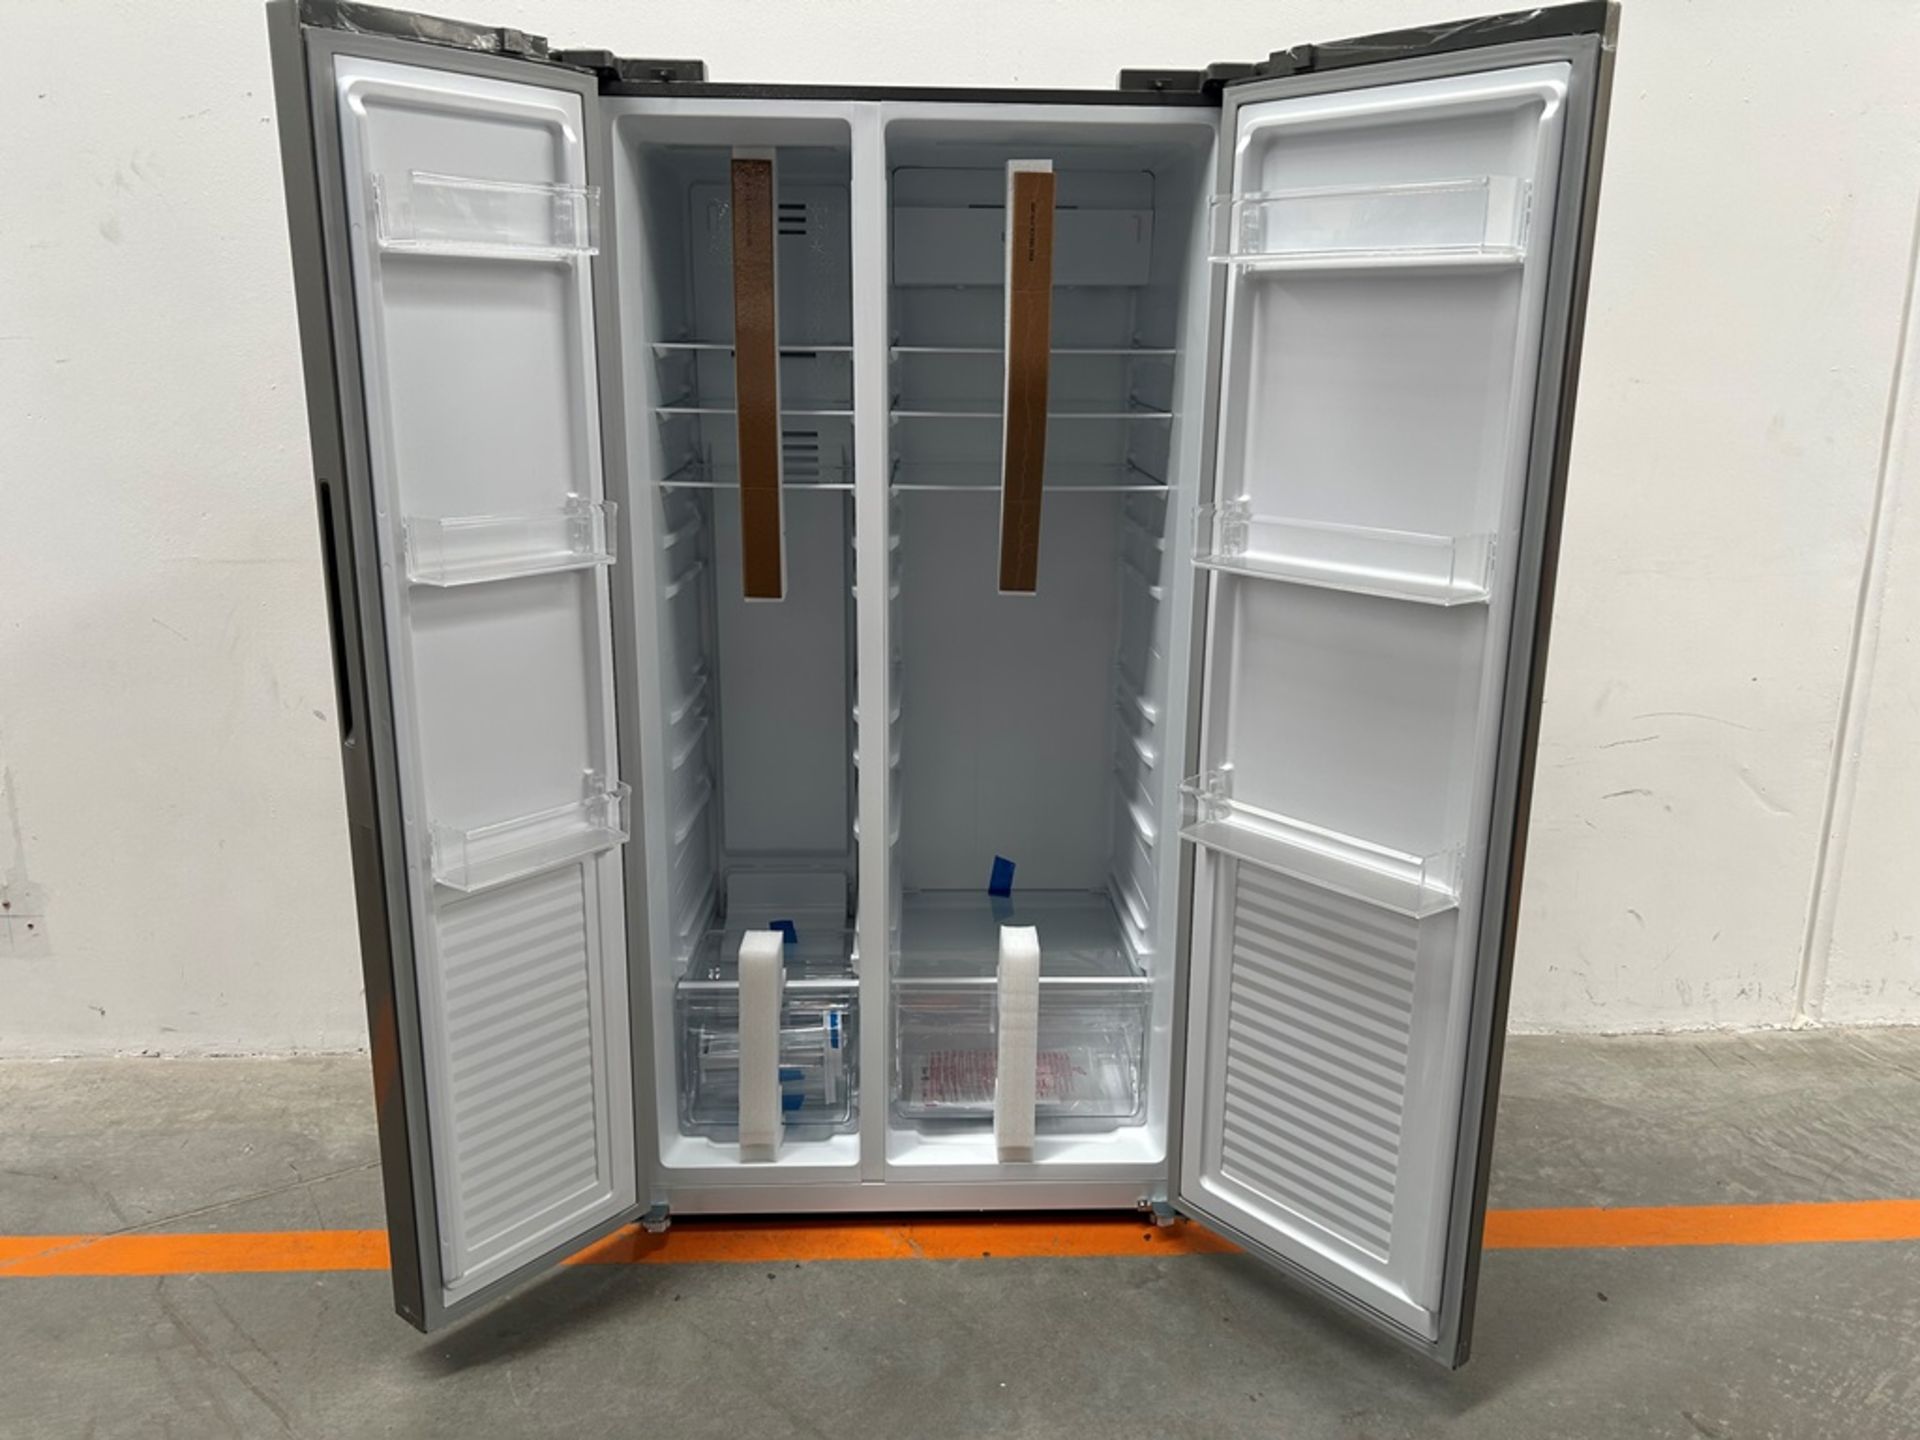 Refrigerador Marca OSTER Modelo OSSBSMV20SSEVI, Serie 160268, Color GRIS (Favor de inspeccionar) - Image 4 of 8